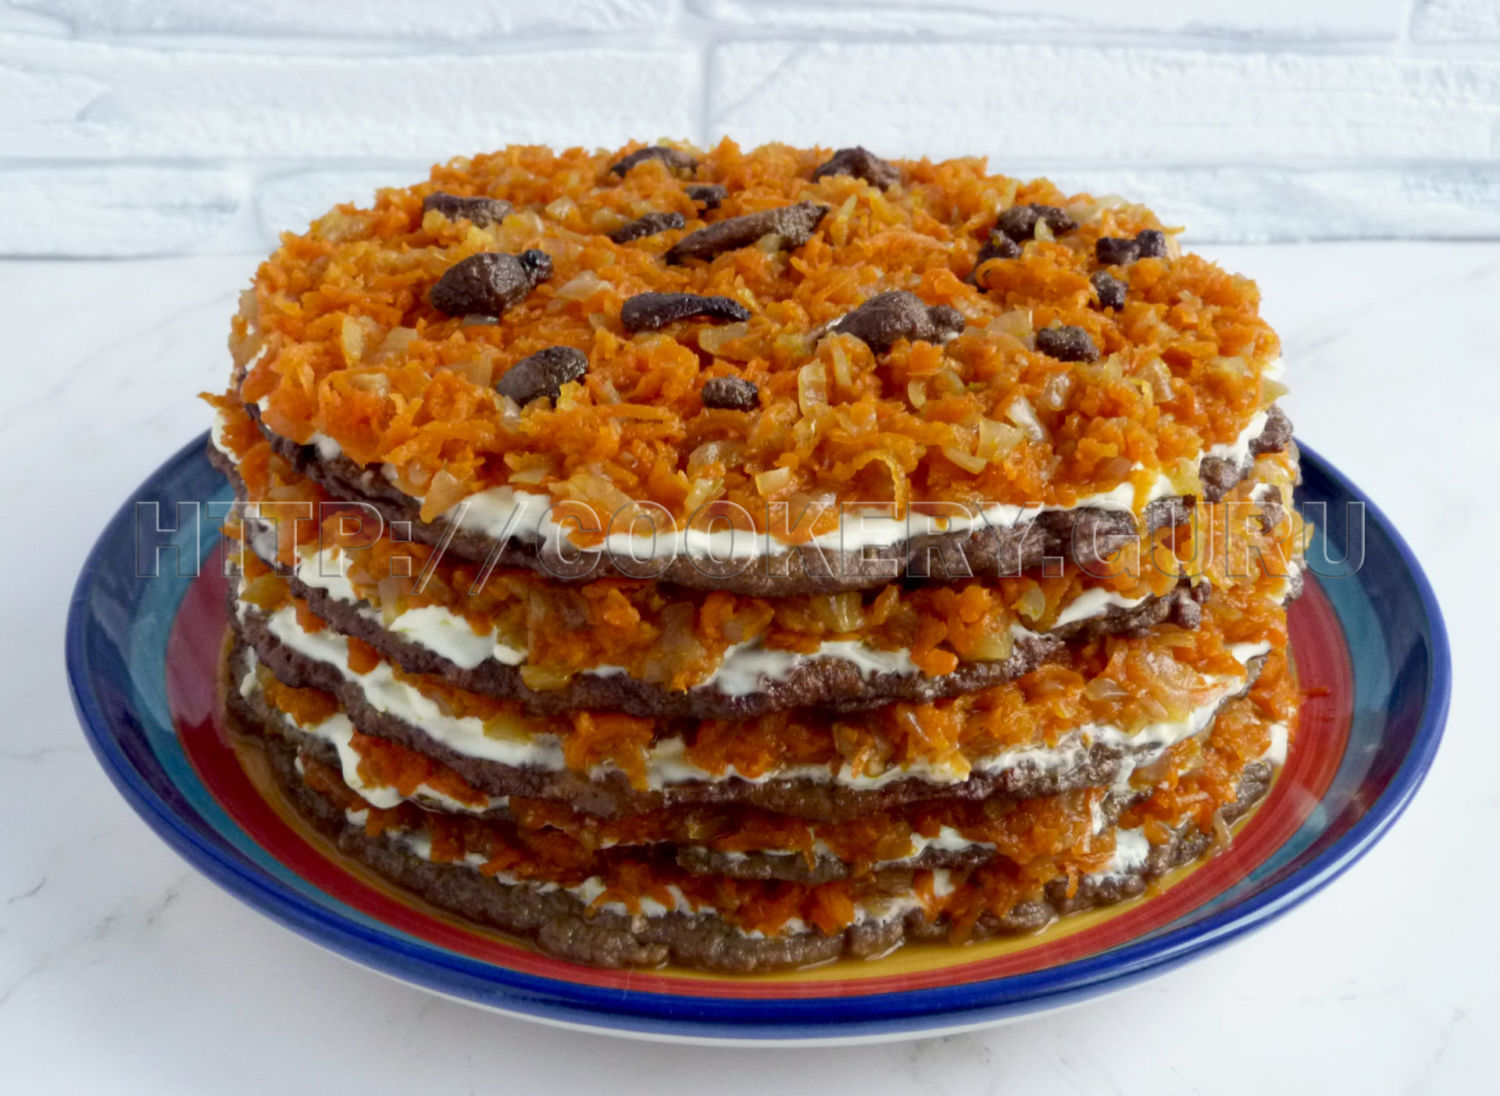 печеночный торт, печеночный торт рецепт, печень печеночный торт, печеночный торт пошагово, печеночный торт рецепт пошагово, печеночный торт из говяжьей печени, печеночный торт с морковью и луком, печеночный пирог, печеночный пирог рецепт, печеночный пирог фото, печеночный пирог рецепт с фото, печеночный пирог с морковью и луком